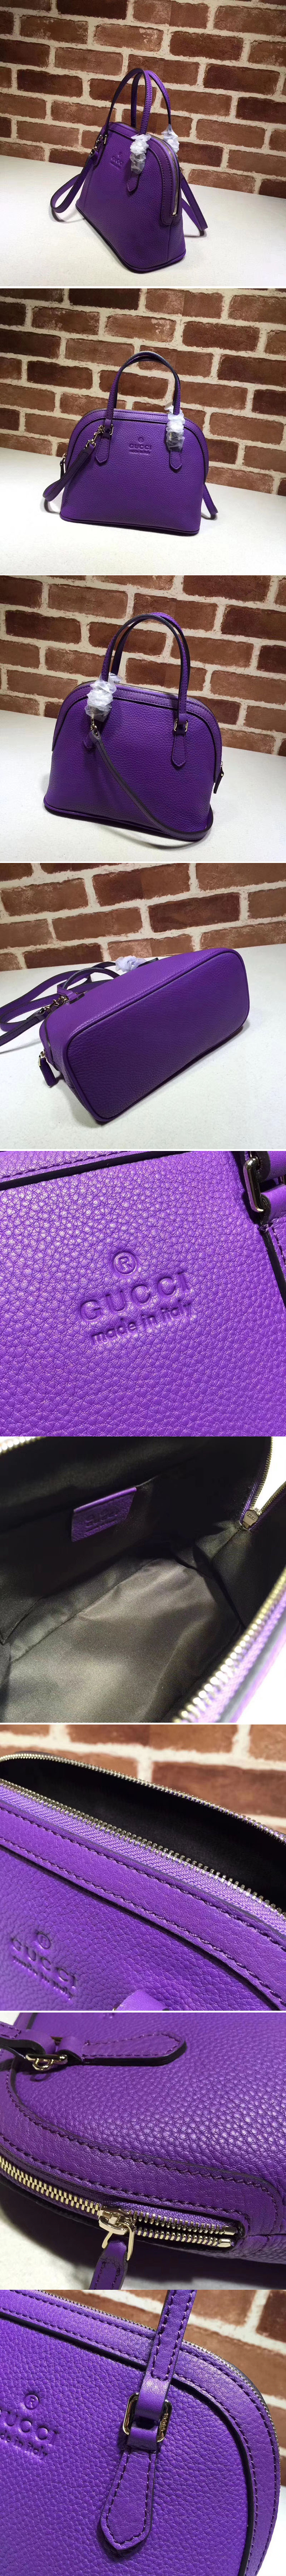 Replica Gucci 341504 Calfskin Leather Small Tote Bags Purple